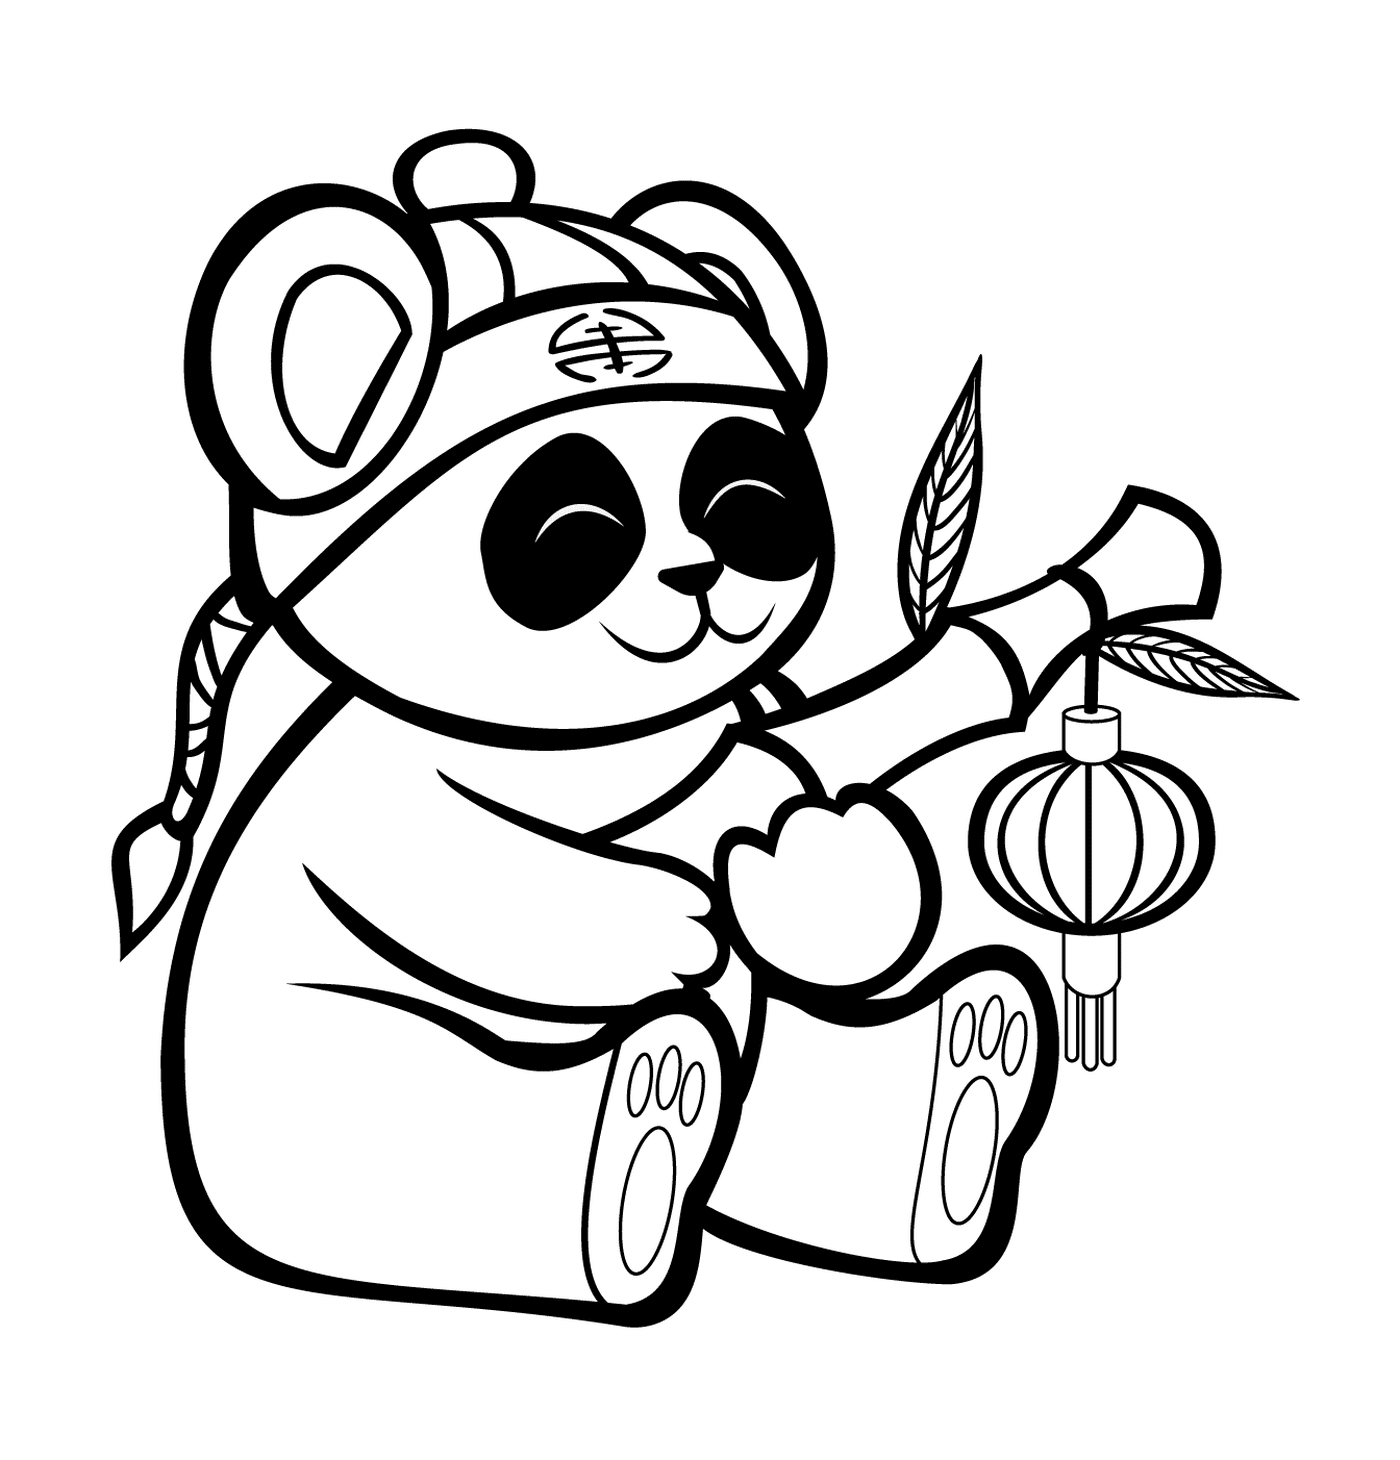  竹竹灯笼,可爱的熊猫 